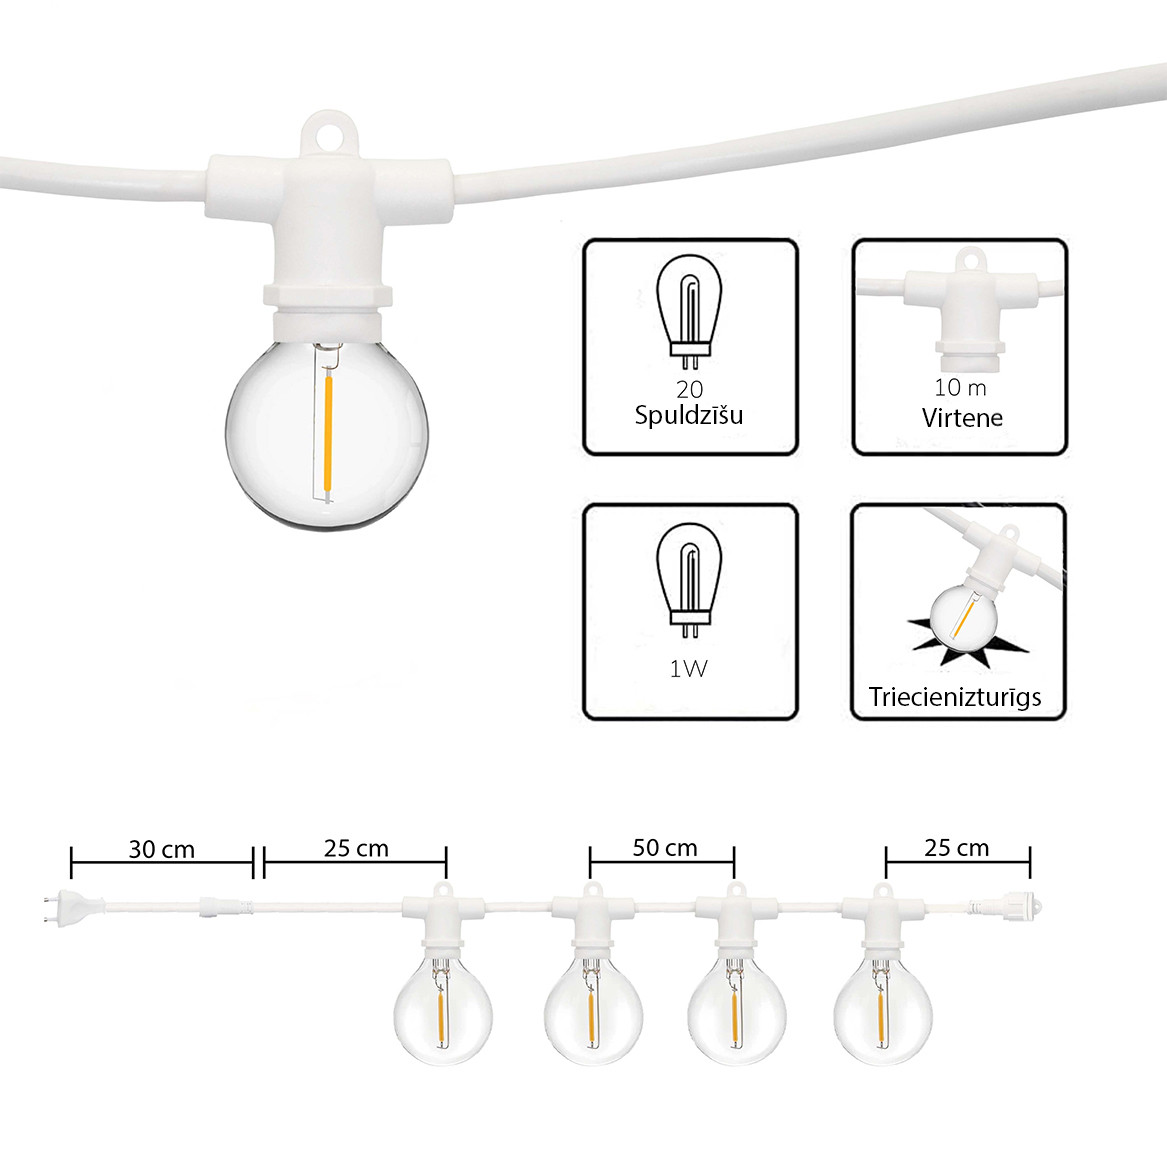 Āra virtene (LED lampiņas) 150 m Perl baltā krāsā